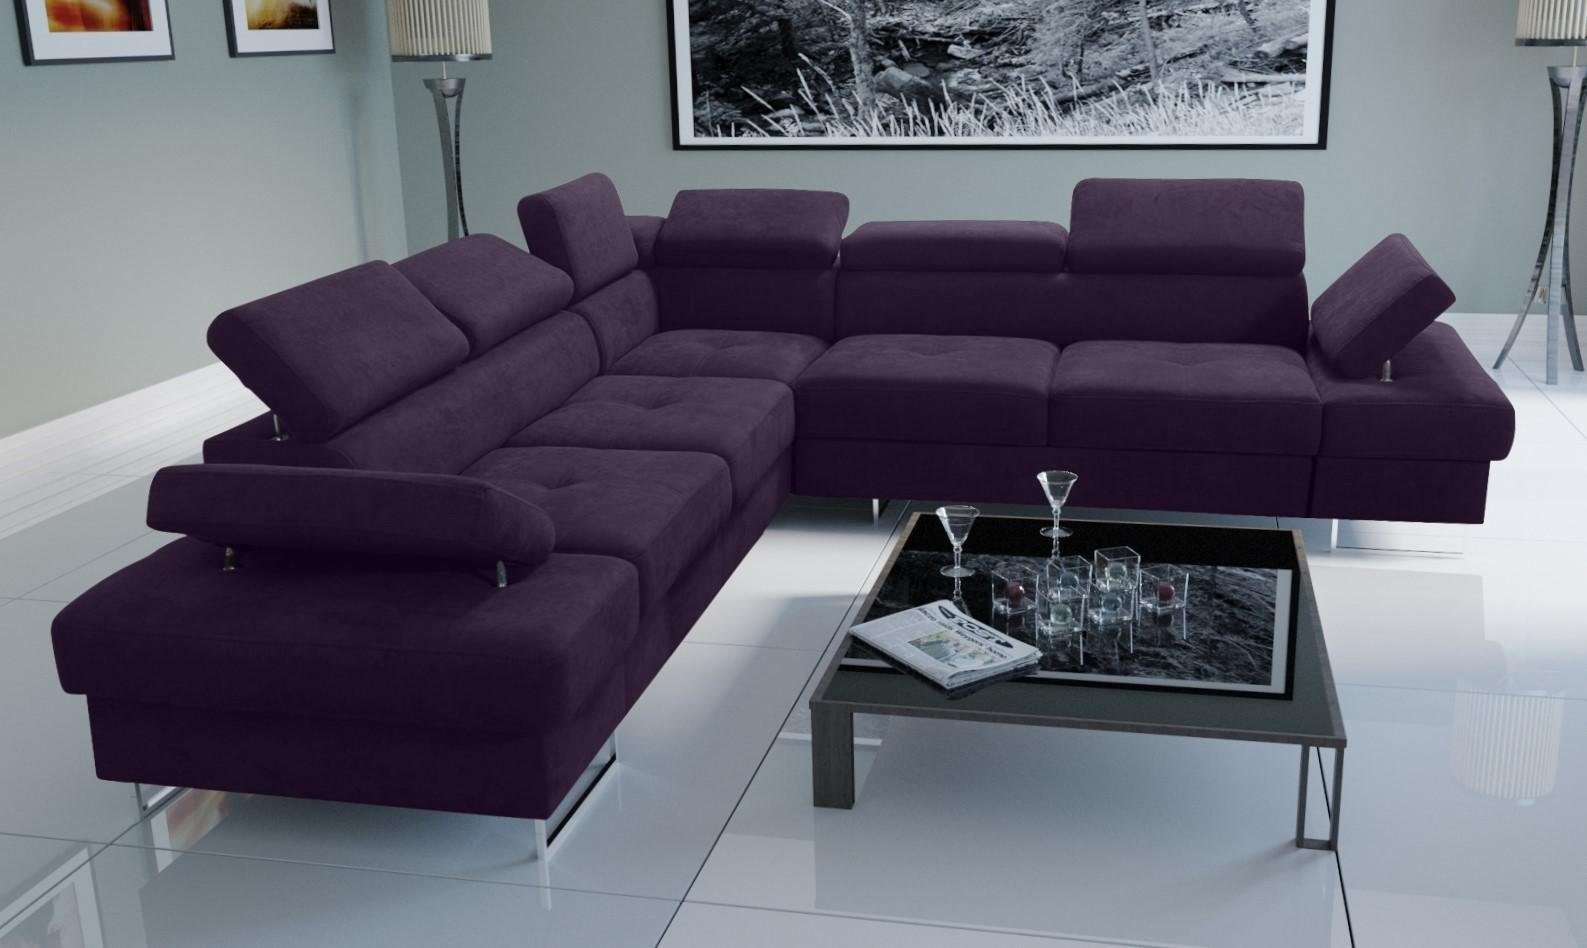 Neue Ware zu günstigen Preisen JVmoebel Ecksofa Sofa Design, Couch Wohnzimmer Europe Lila Made L-Form in Polsterung